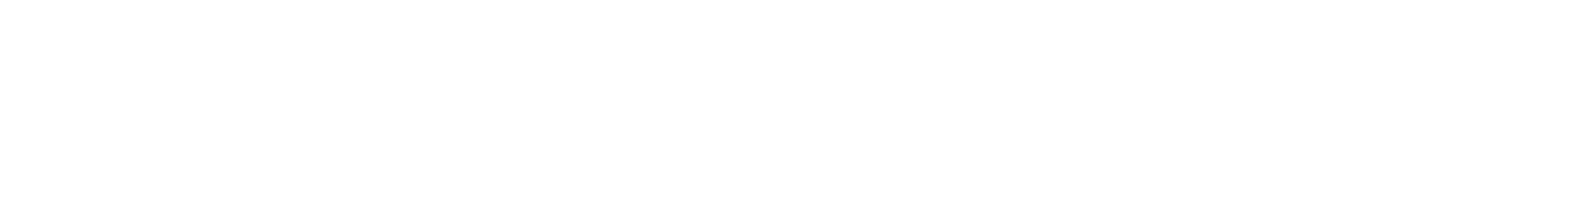 Colgate-Palmolive logo grand pour les fonds sombres (PNG transparent)